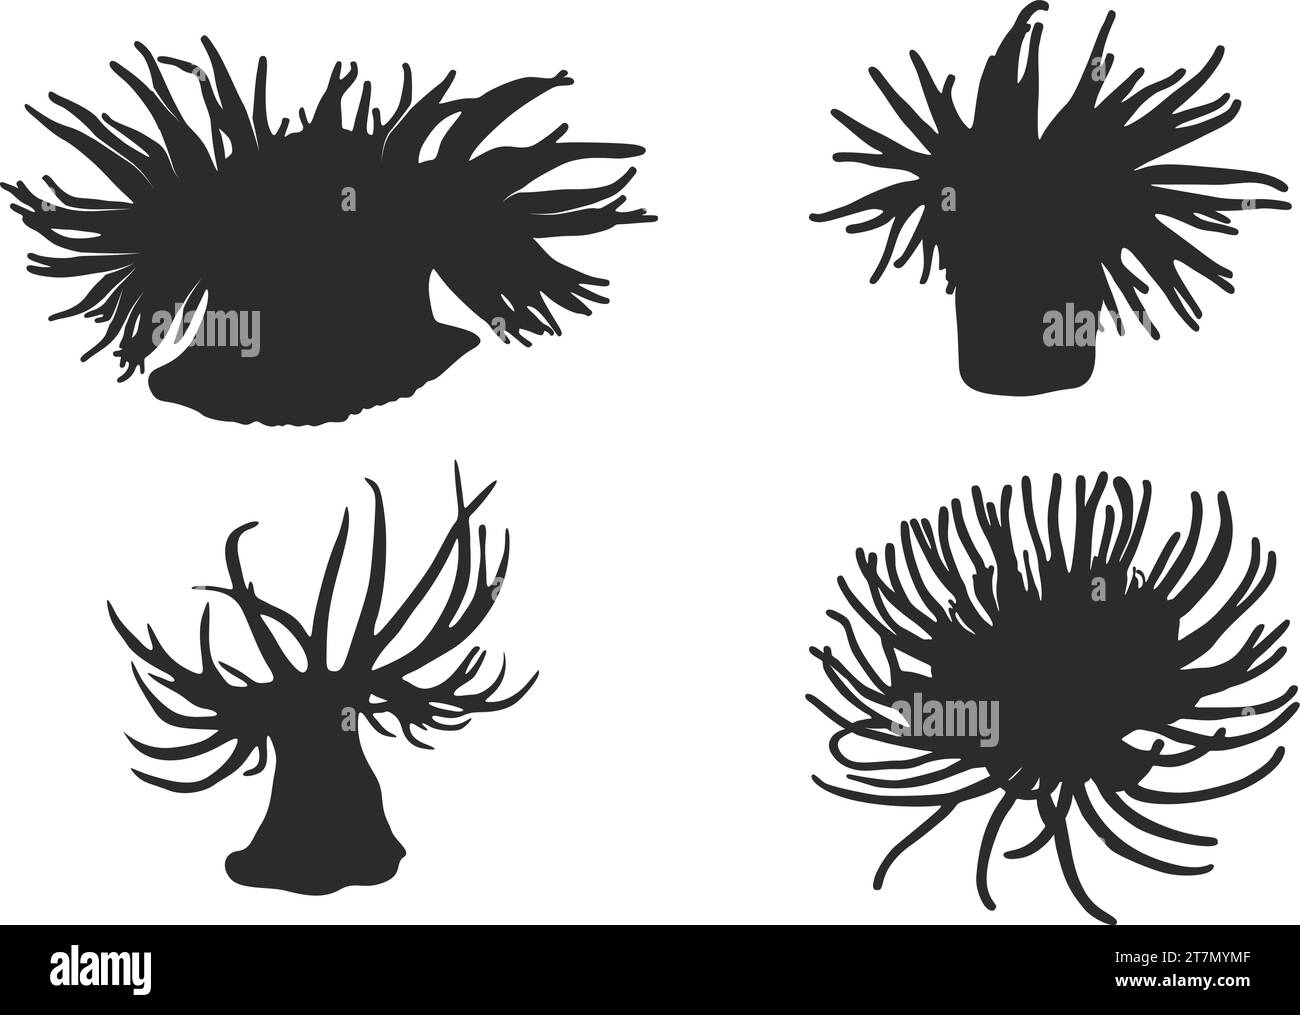 Sagoma di anemone marino, illustrazione vettoriale di anemone marino, clipart di anemone marino. Illustrazione Vettoriale